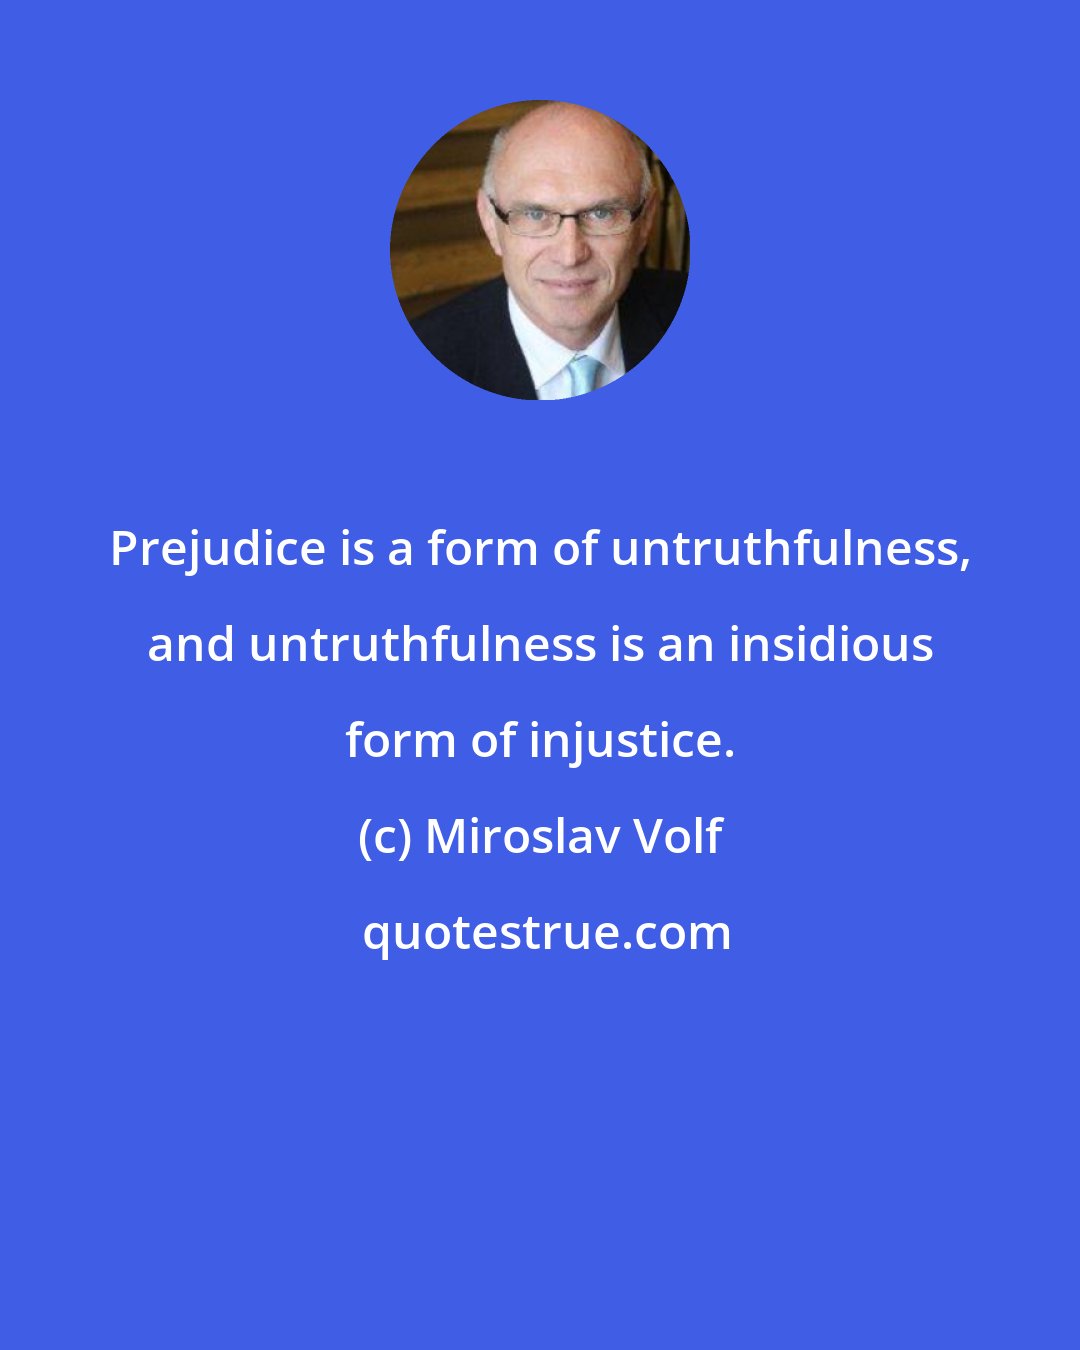 Miroslav Volf: Prejudice is a form of untruthfulness, and untruthfulness is an insidious form of injustice.